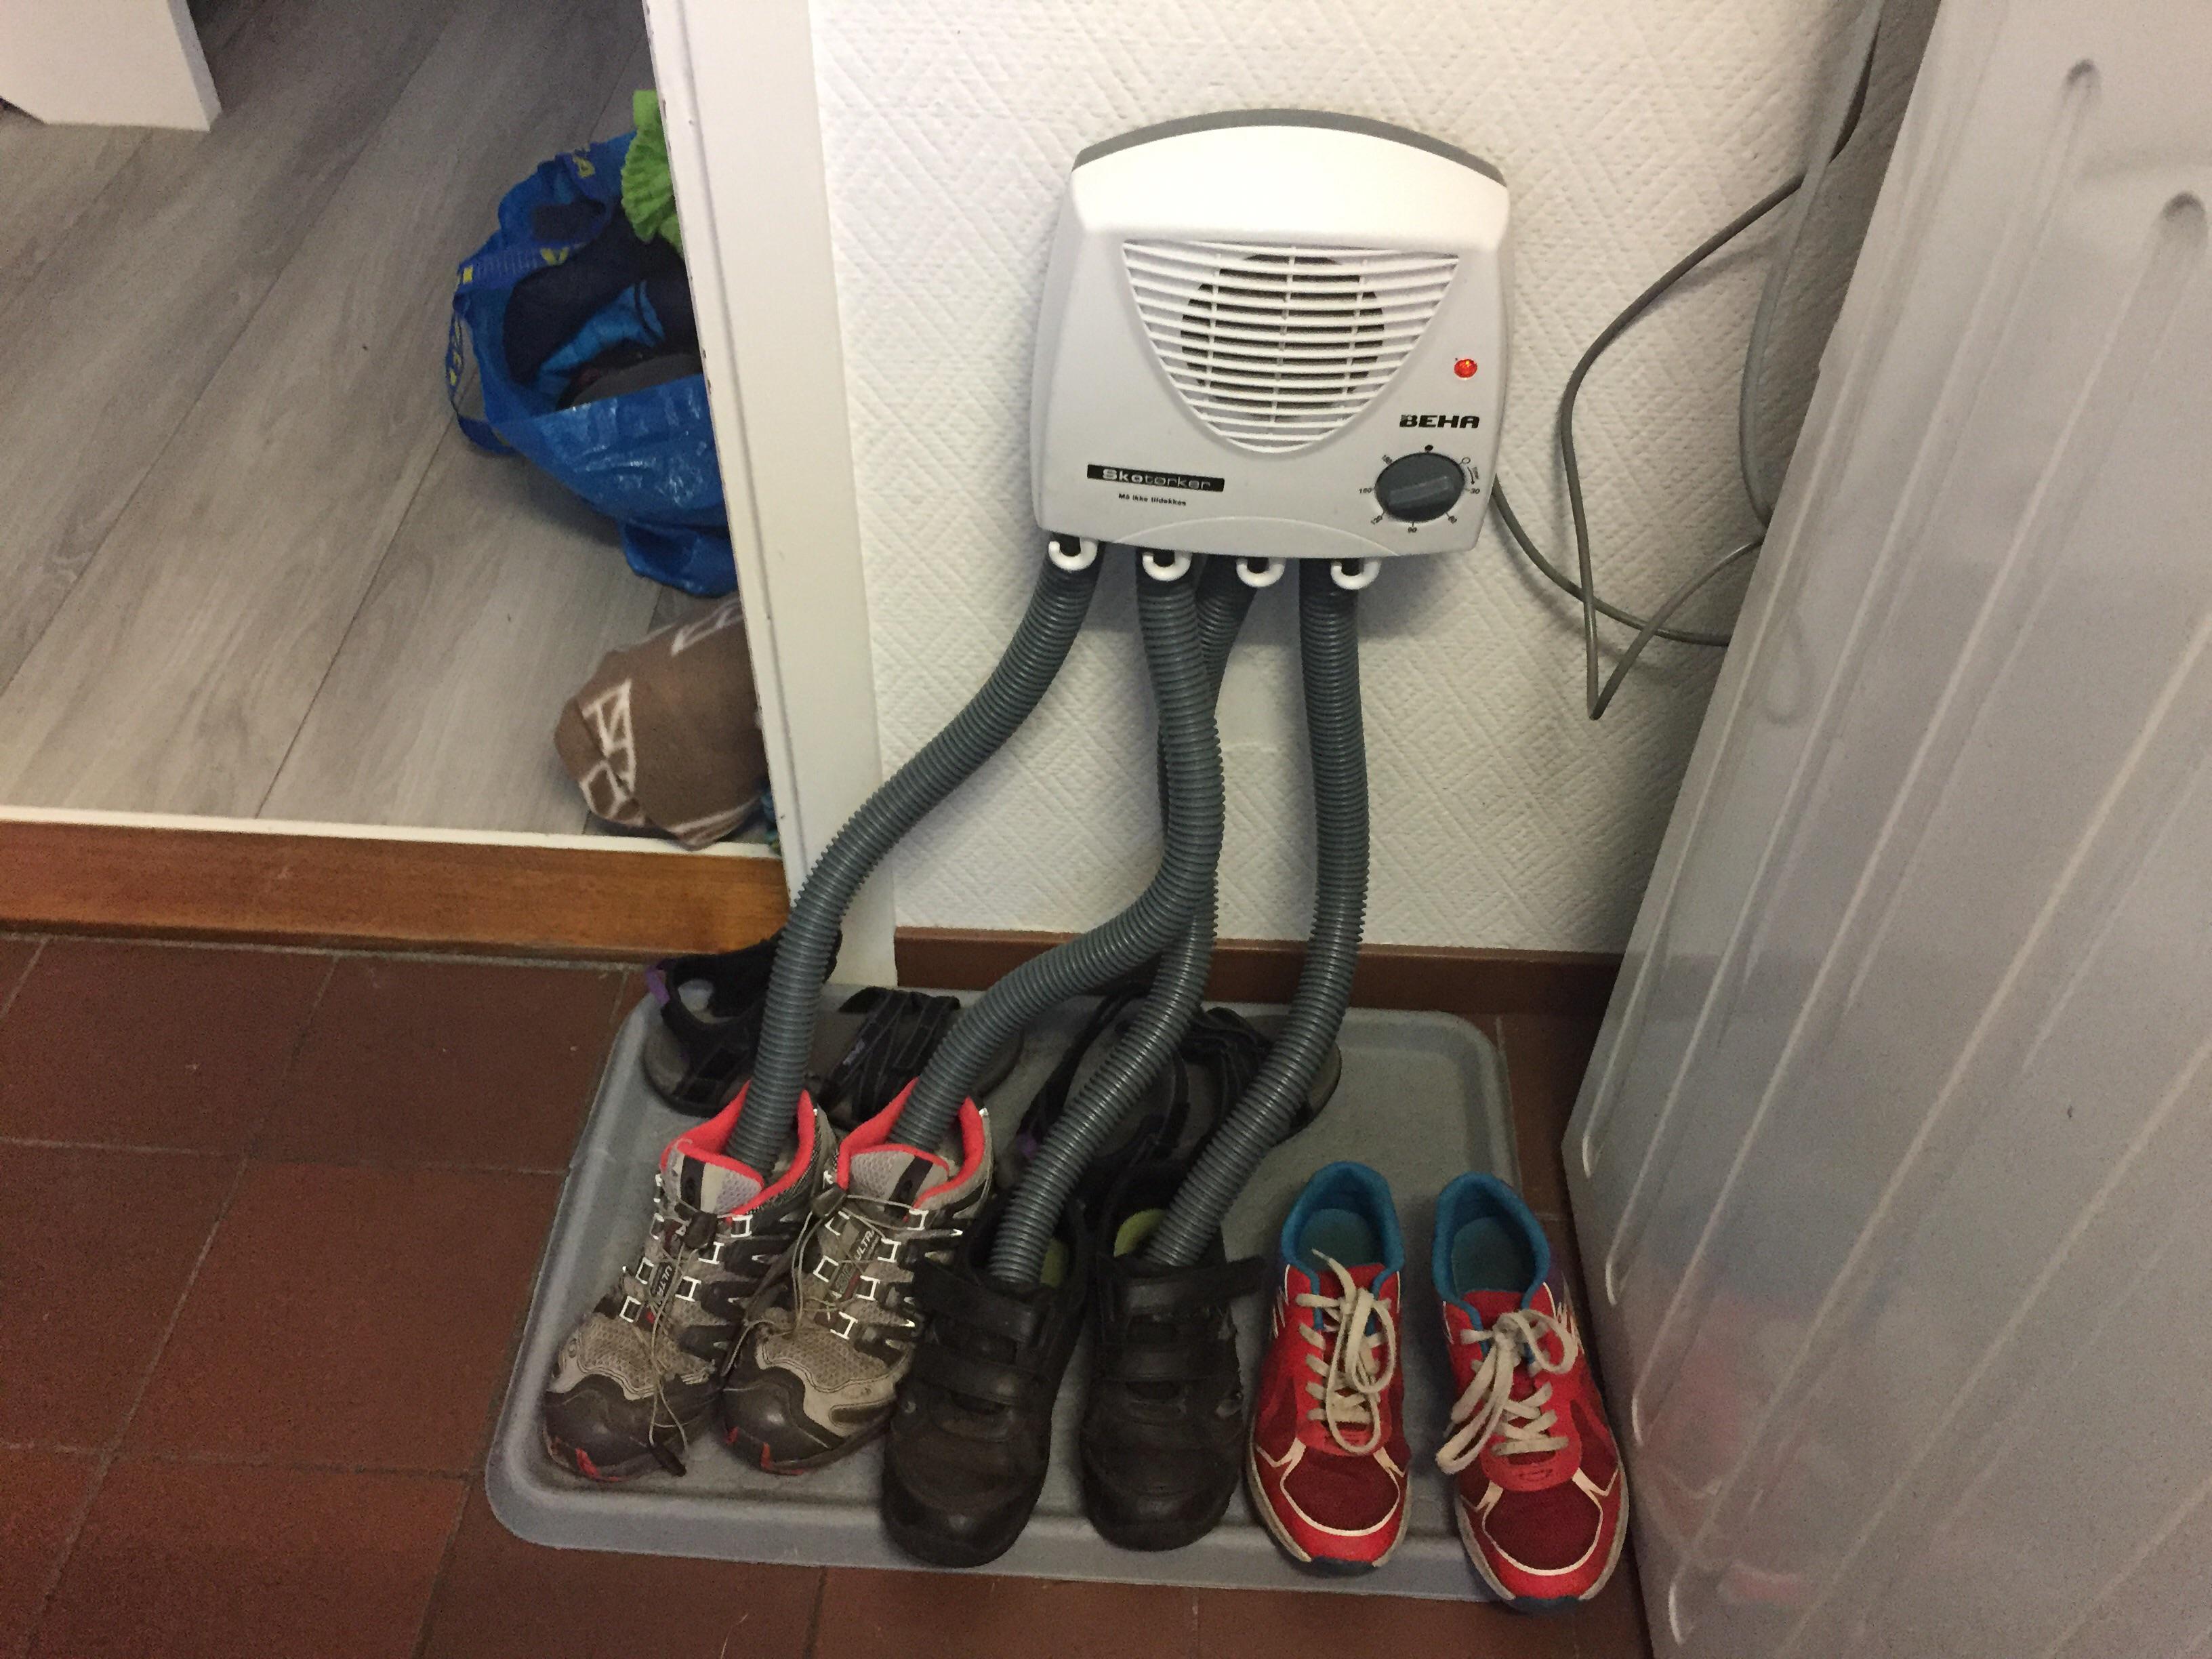 Norwegian shoe drying machine.